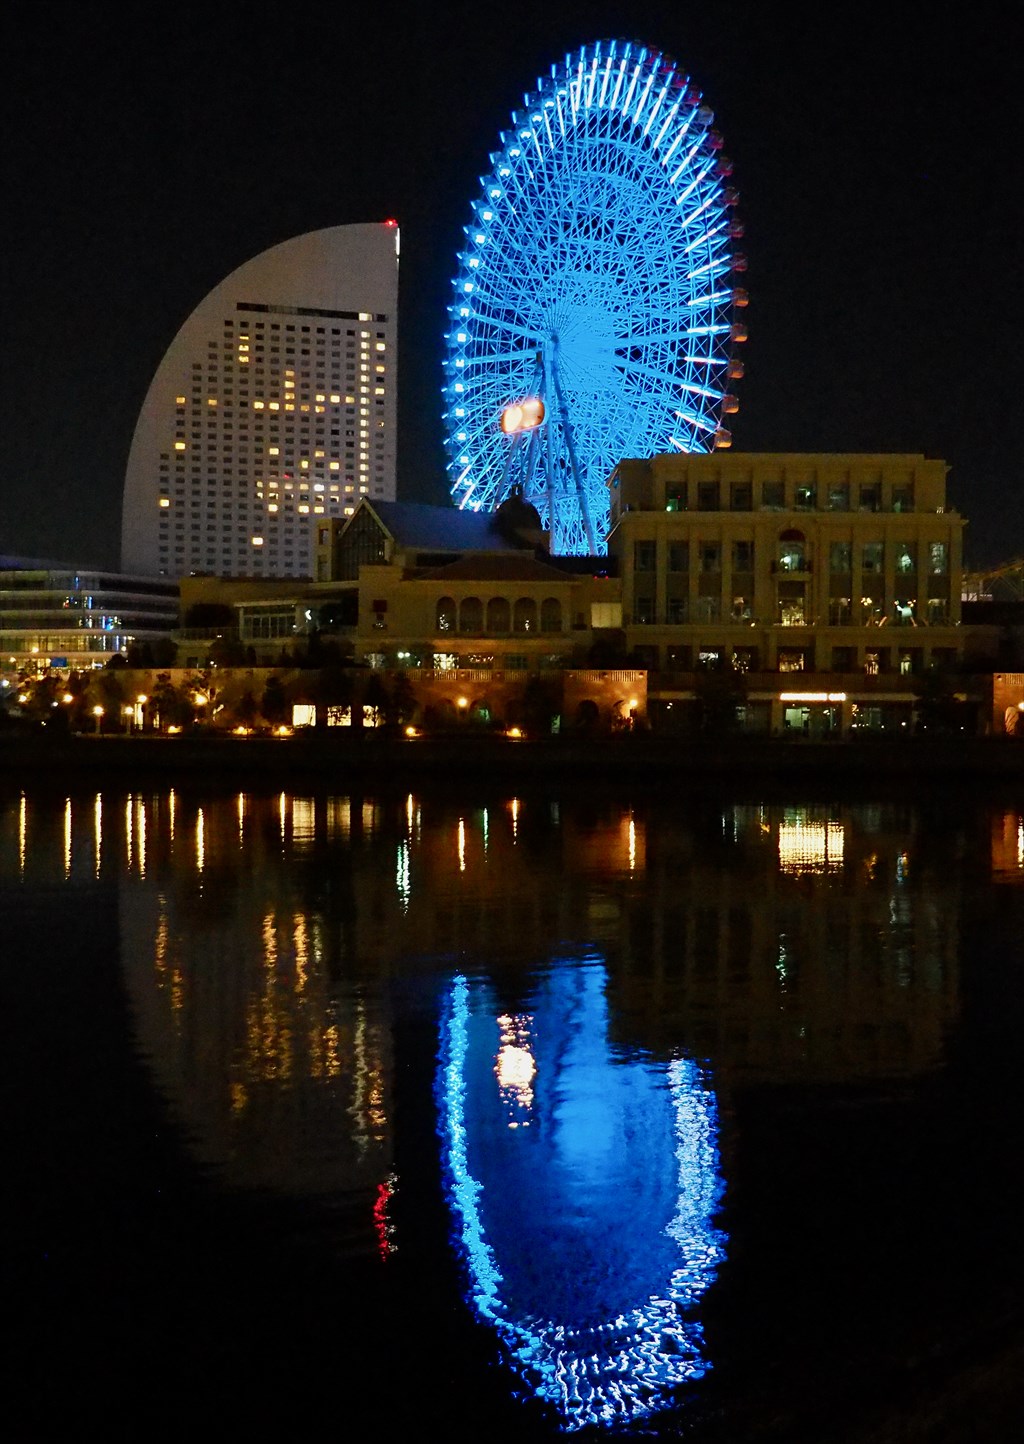 横浜みなとみらいの夜景 ブログ フリー画像 無料写真 フリー素材